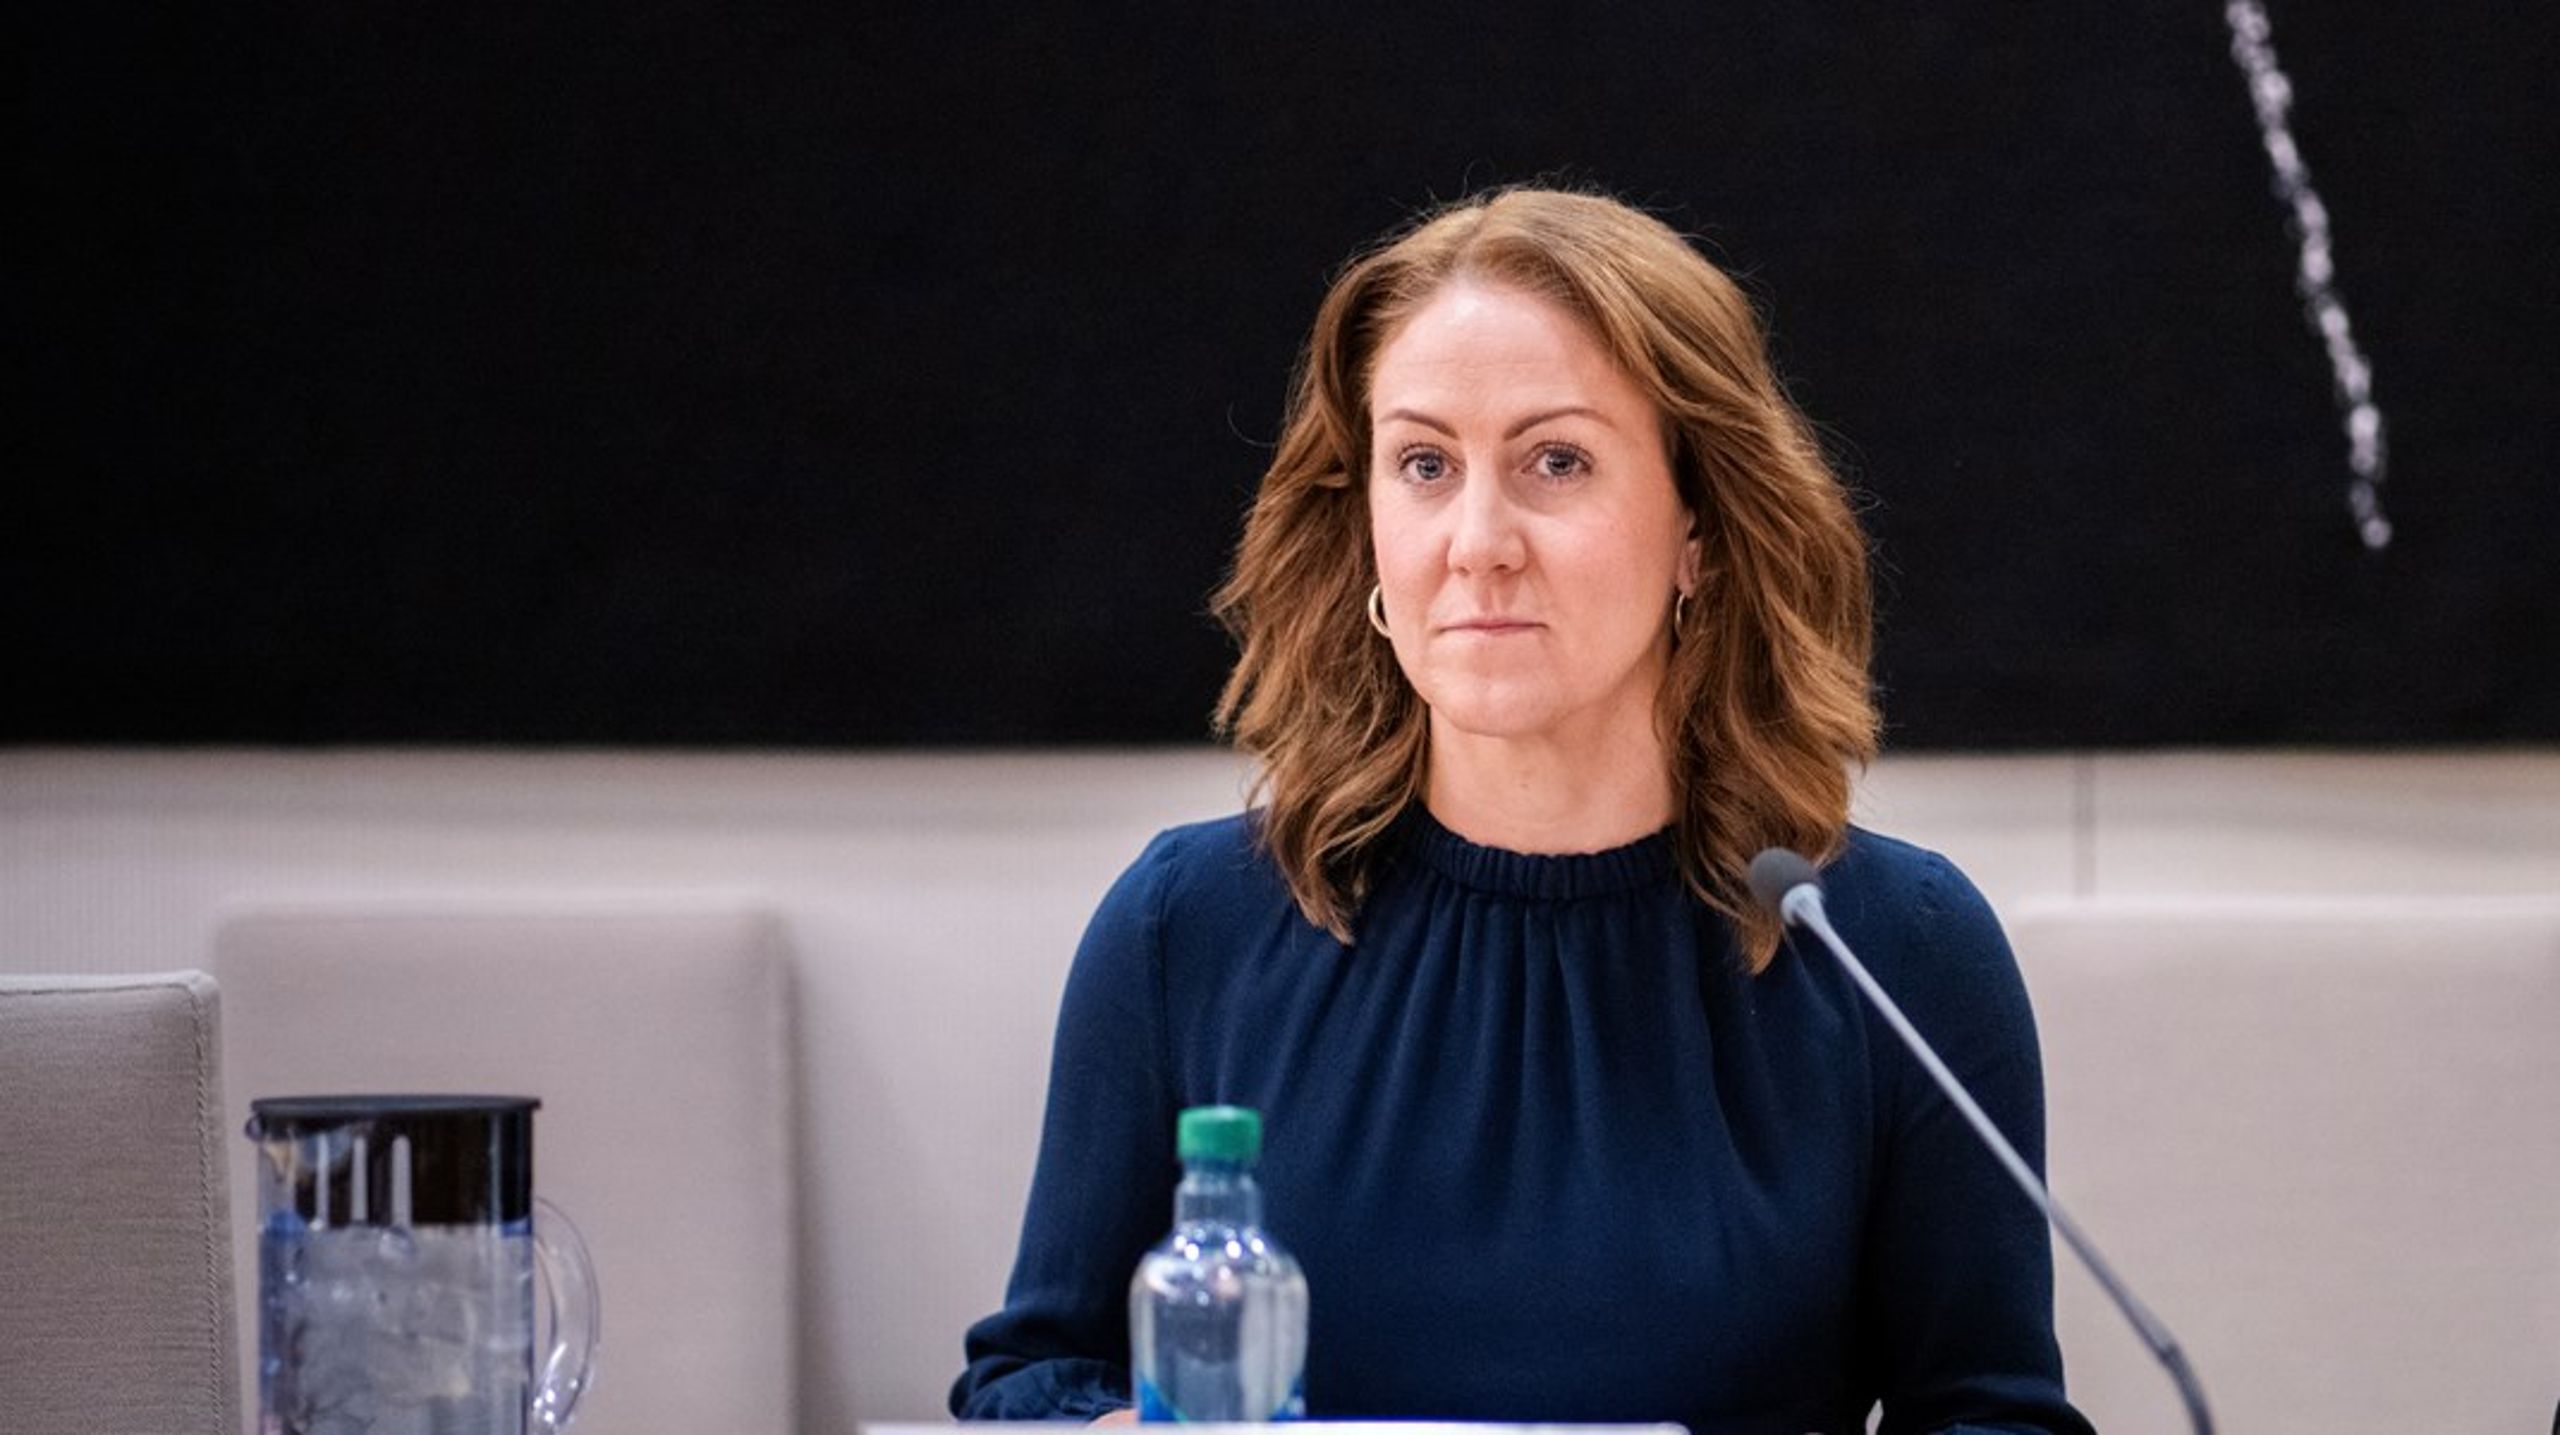 INNRØMMER FEIL: Arbeids- og inkluderingsminister Tonje Brenna (Ap) innrømmer at hun burde ha gitt mer informasjon om de interne prosessene i departementet.